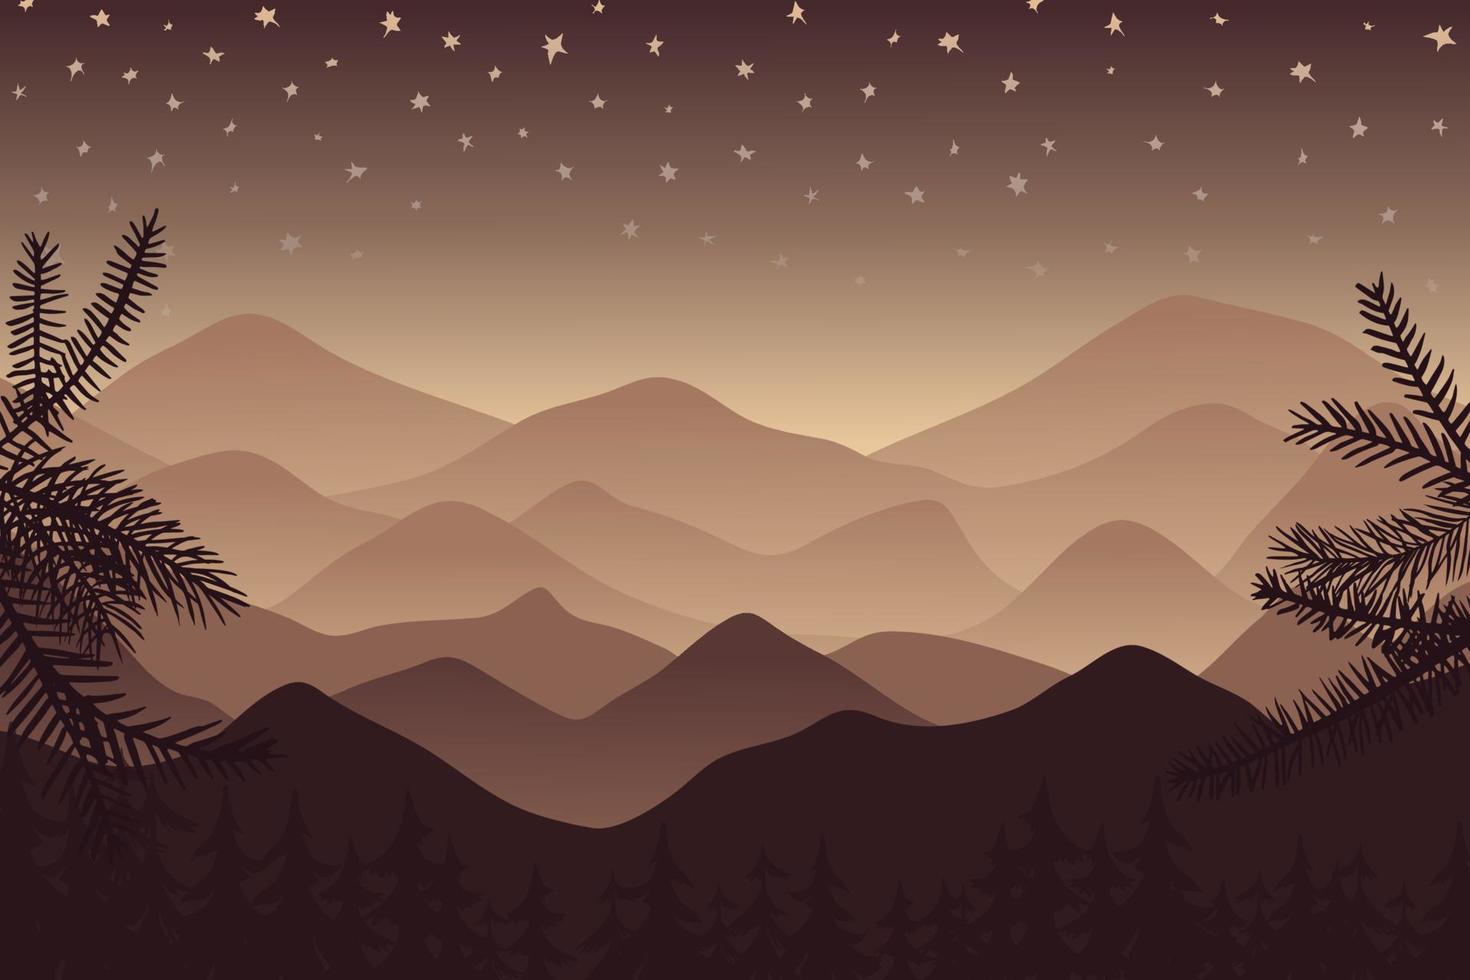 vector paisaje plano marrón. colinas y montañas con un cielo estrellado, en primer plano un bosque de coníferas y ramas de coníferas enmarcan la ilustración. gradientes de café suave pastel.